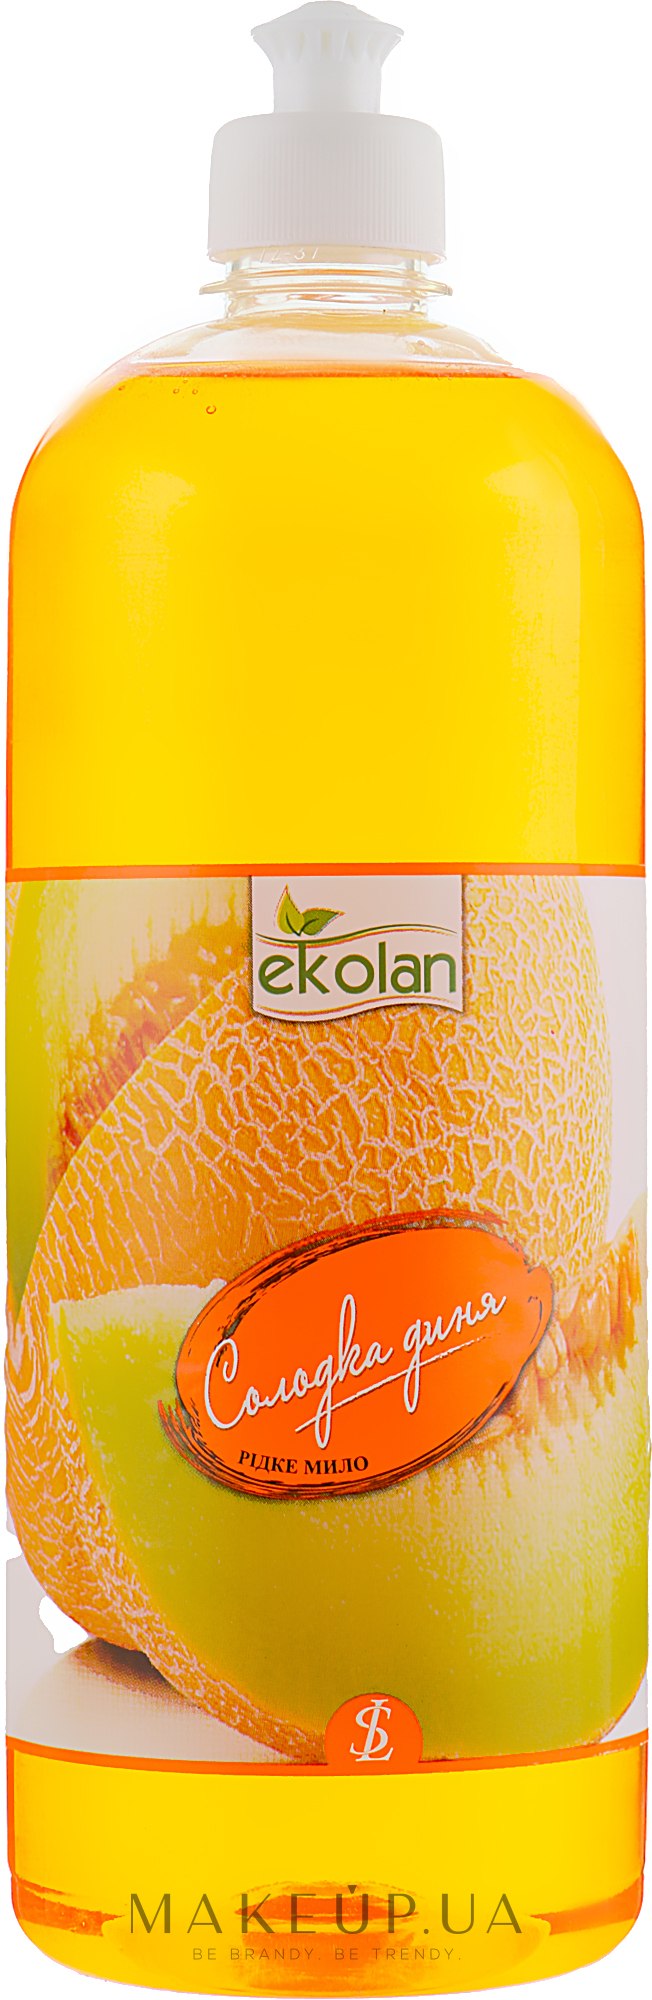 Жидкое мыло "Сладкая дыня" с колпачком пуш-пул - EkoLan  — фото 1000ml